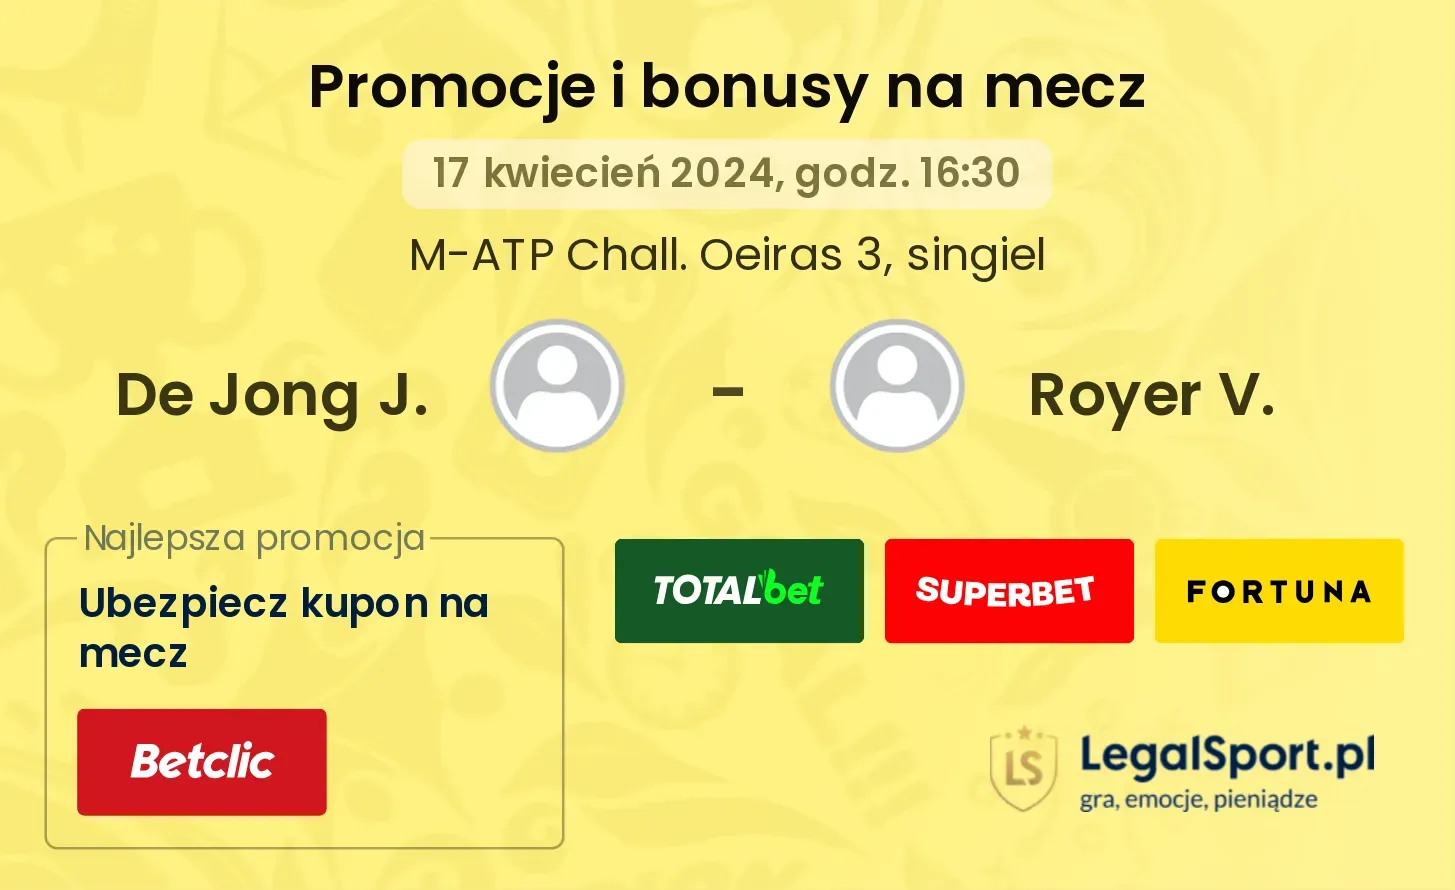 De Jong J. - Royer V. promocje bonusy na mecz